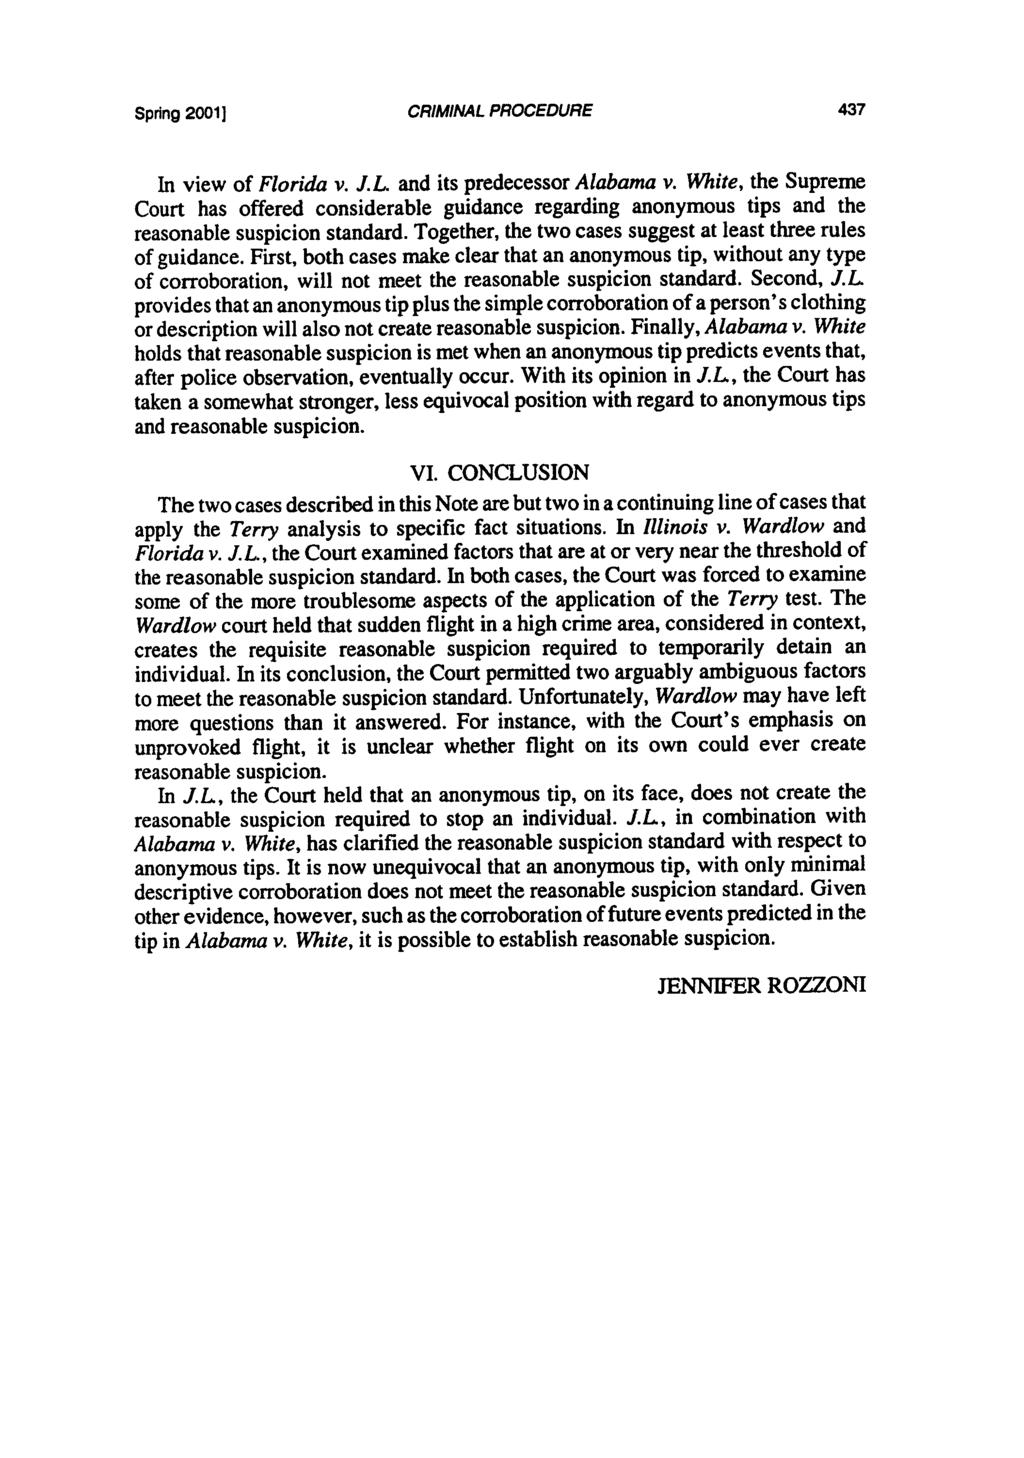 Spdng 20011 CRIMINAL PROCEDURE In view of Florida v. J.L and its predecessor Alabama v.